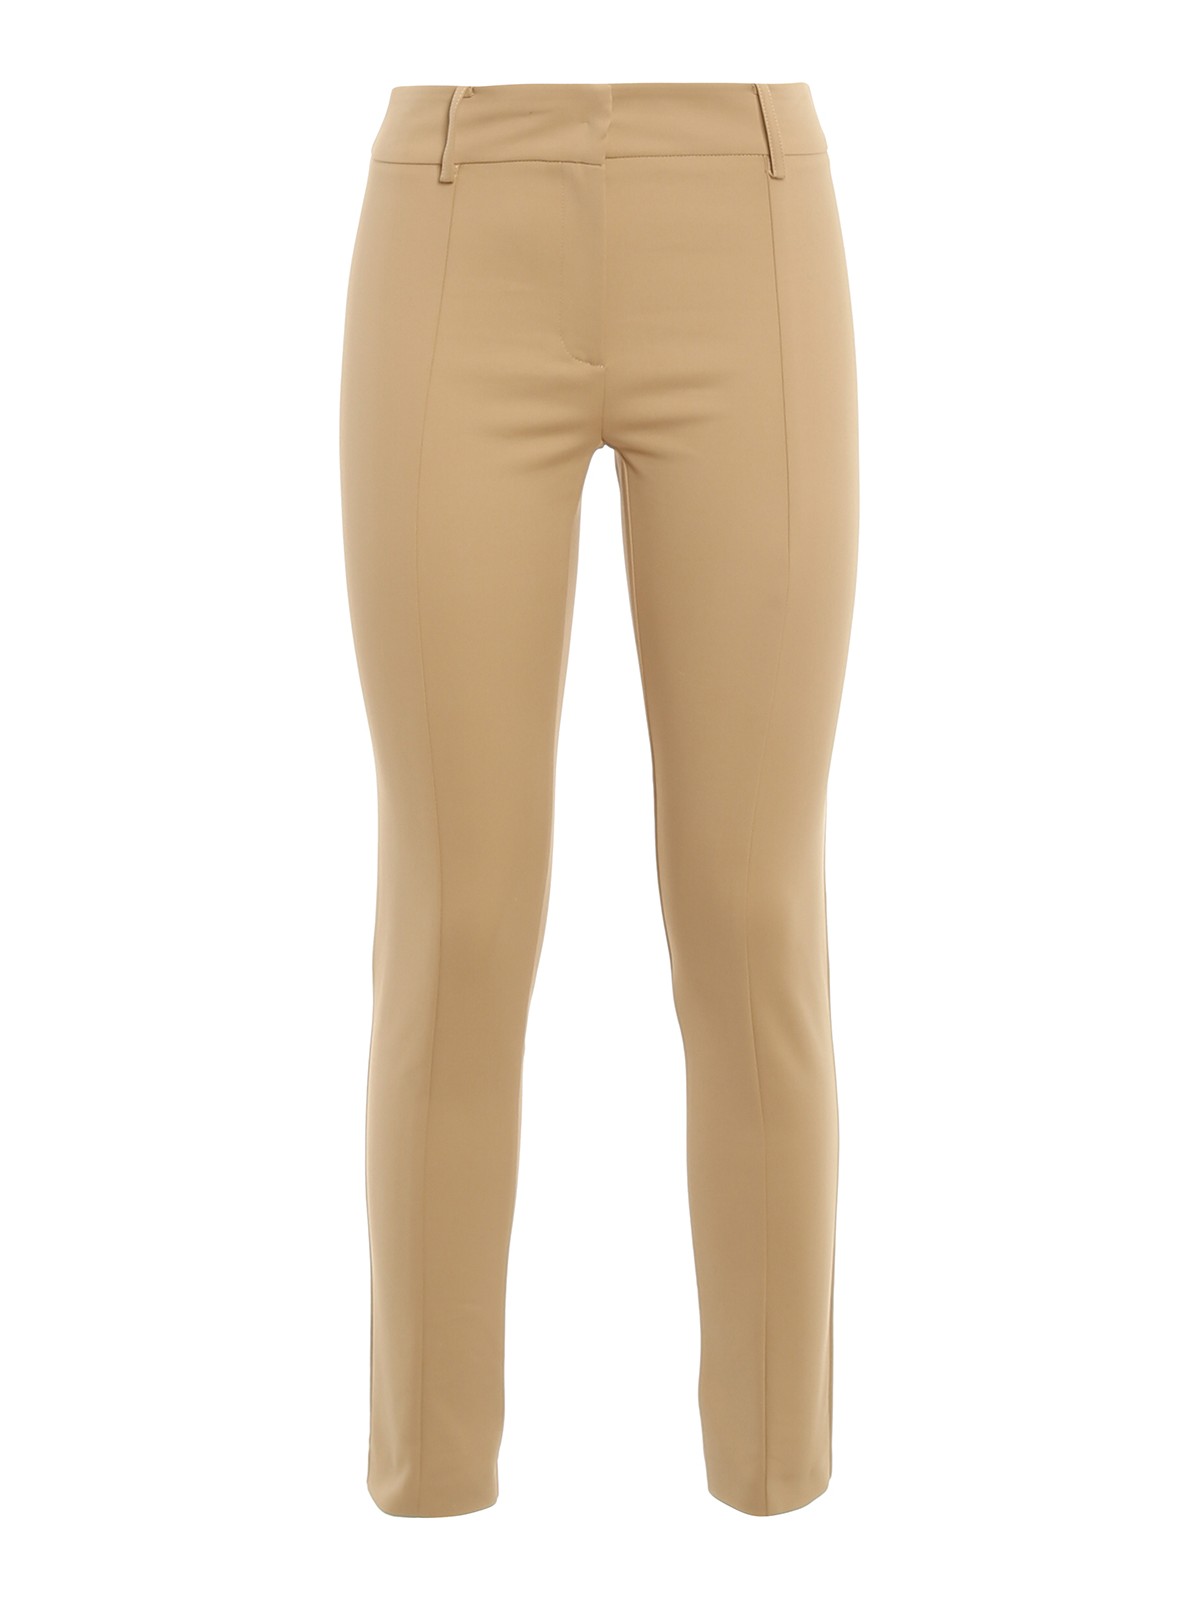 Pantalon de vestir color beige para mujer, elástico, estilo formal.